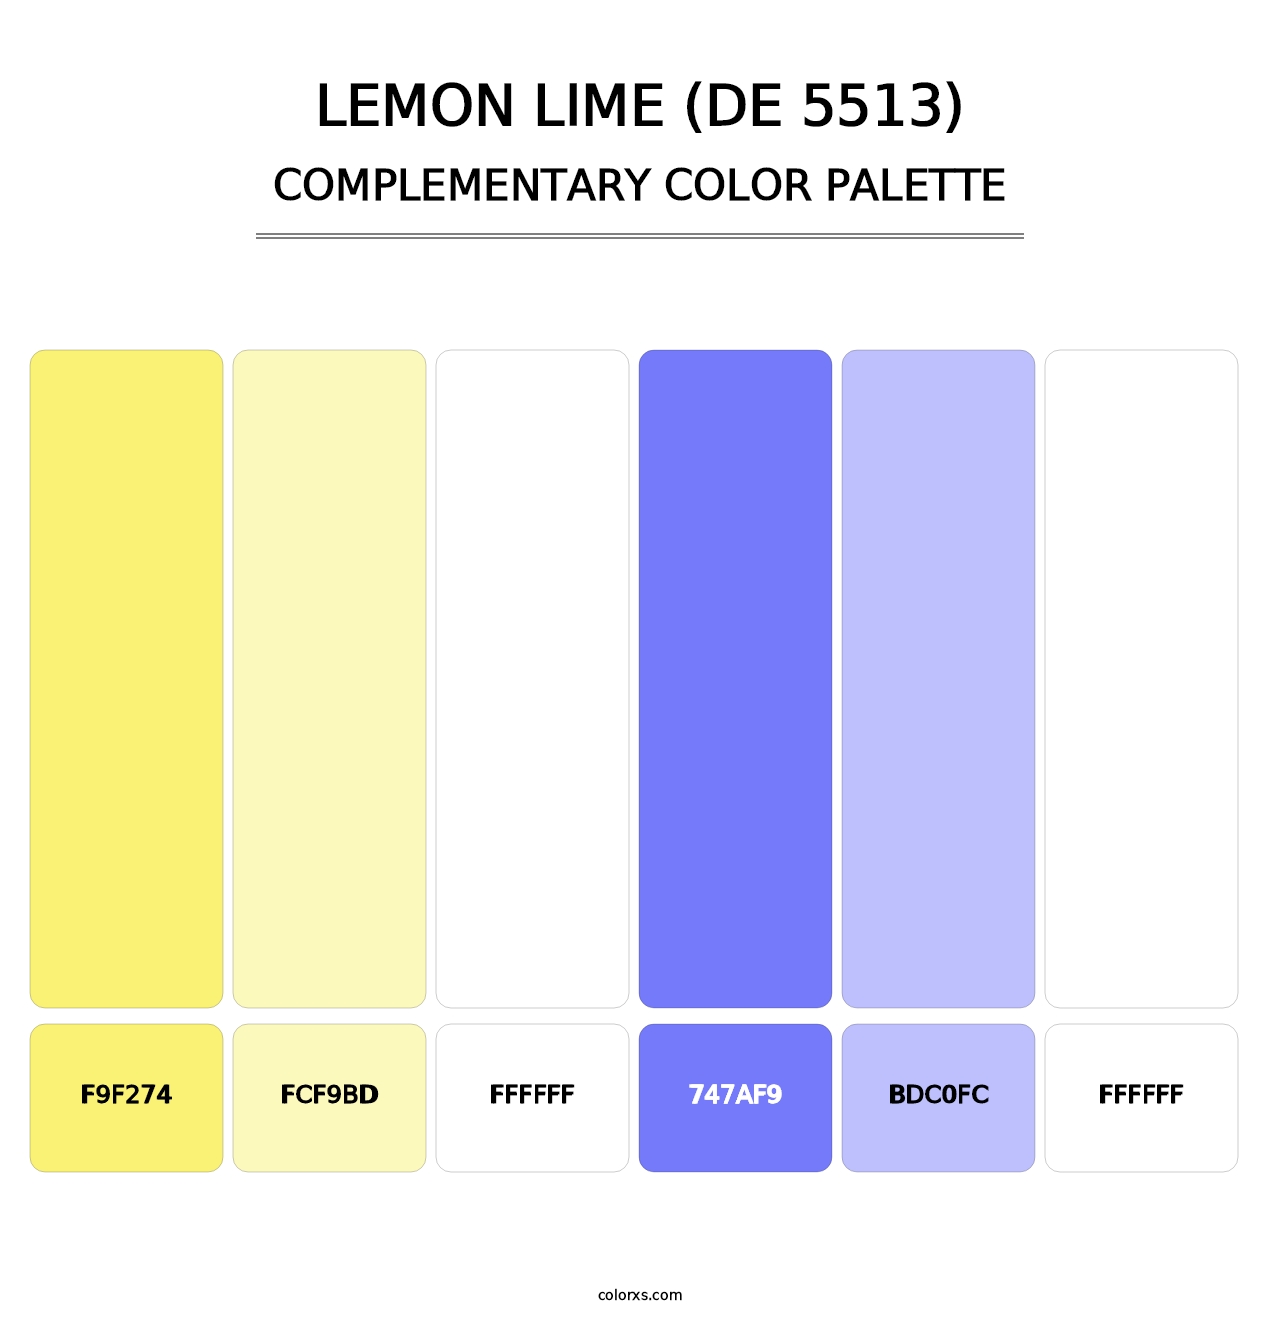 Lemon Lime (DE 5513) - Complementary Color Palette